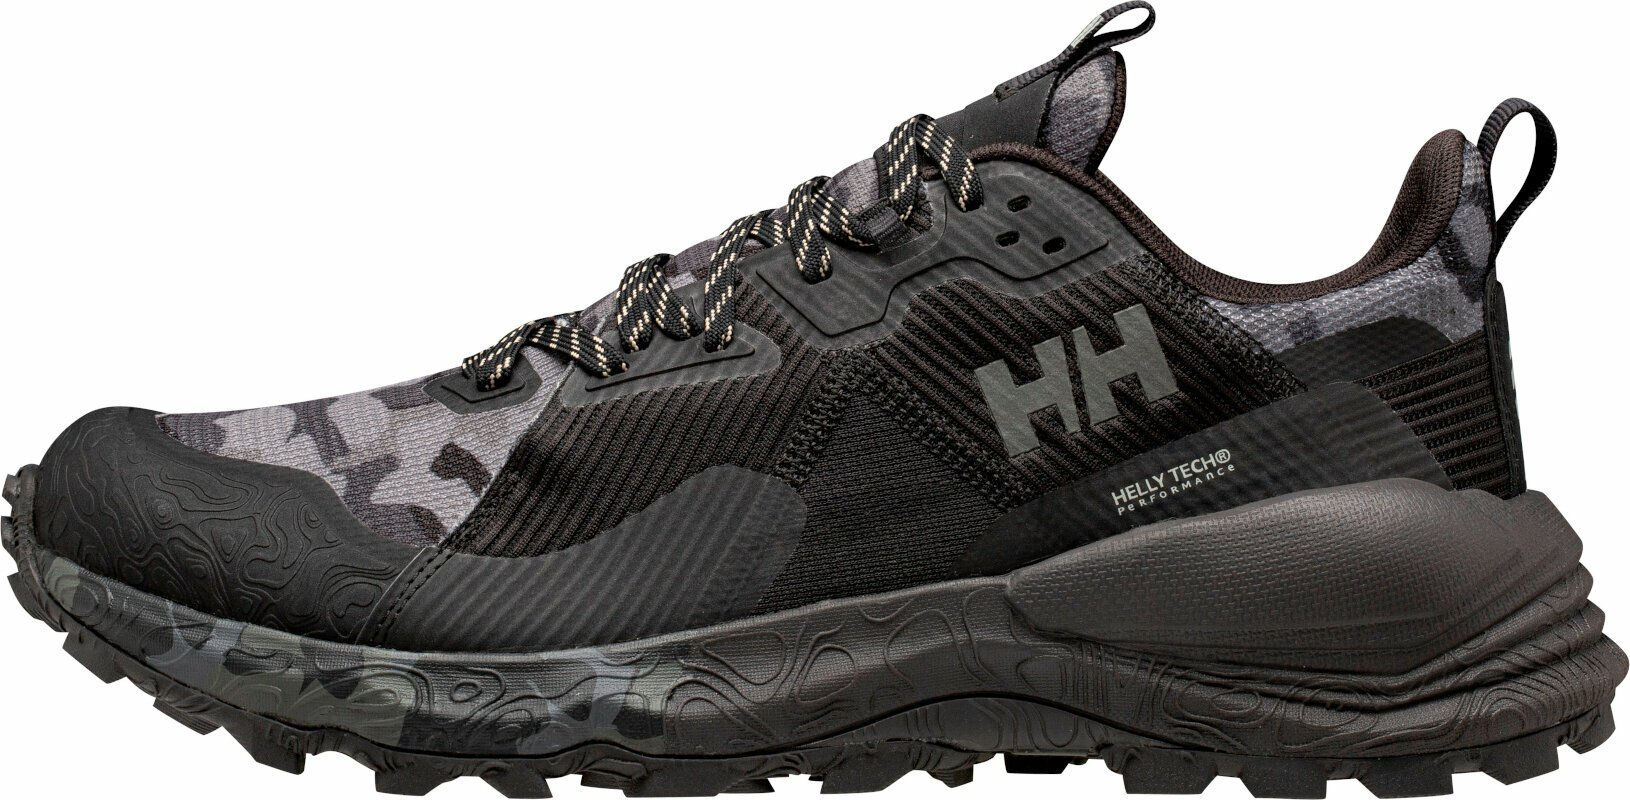 Trailschoenen Helly Hansen Men's Hawk Stapro Trail Running High Top Shoes  Black/Phantom Ebony 43 Trailschoenen